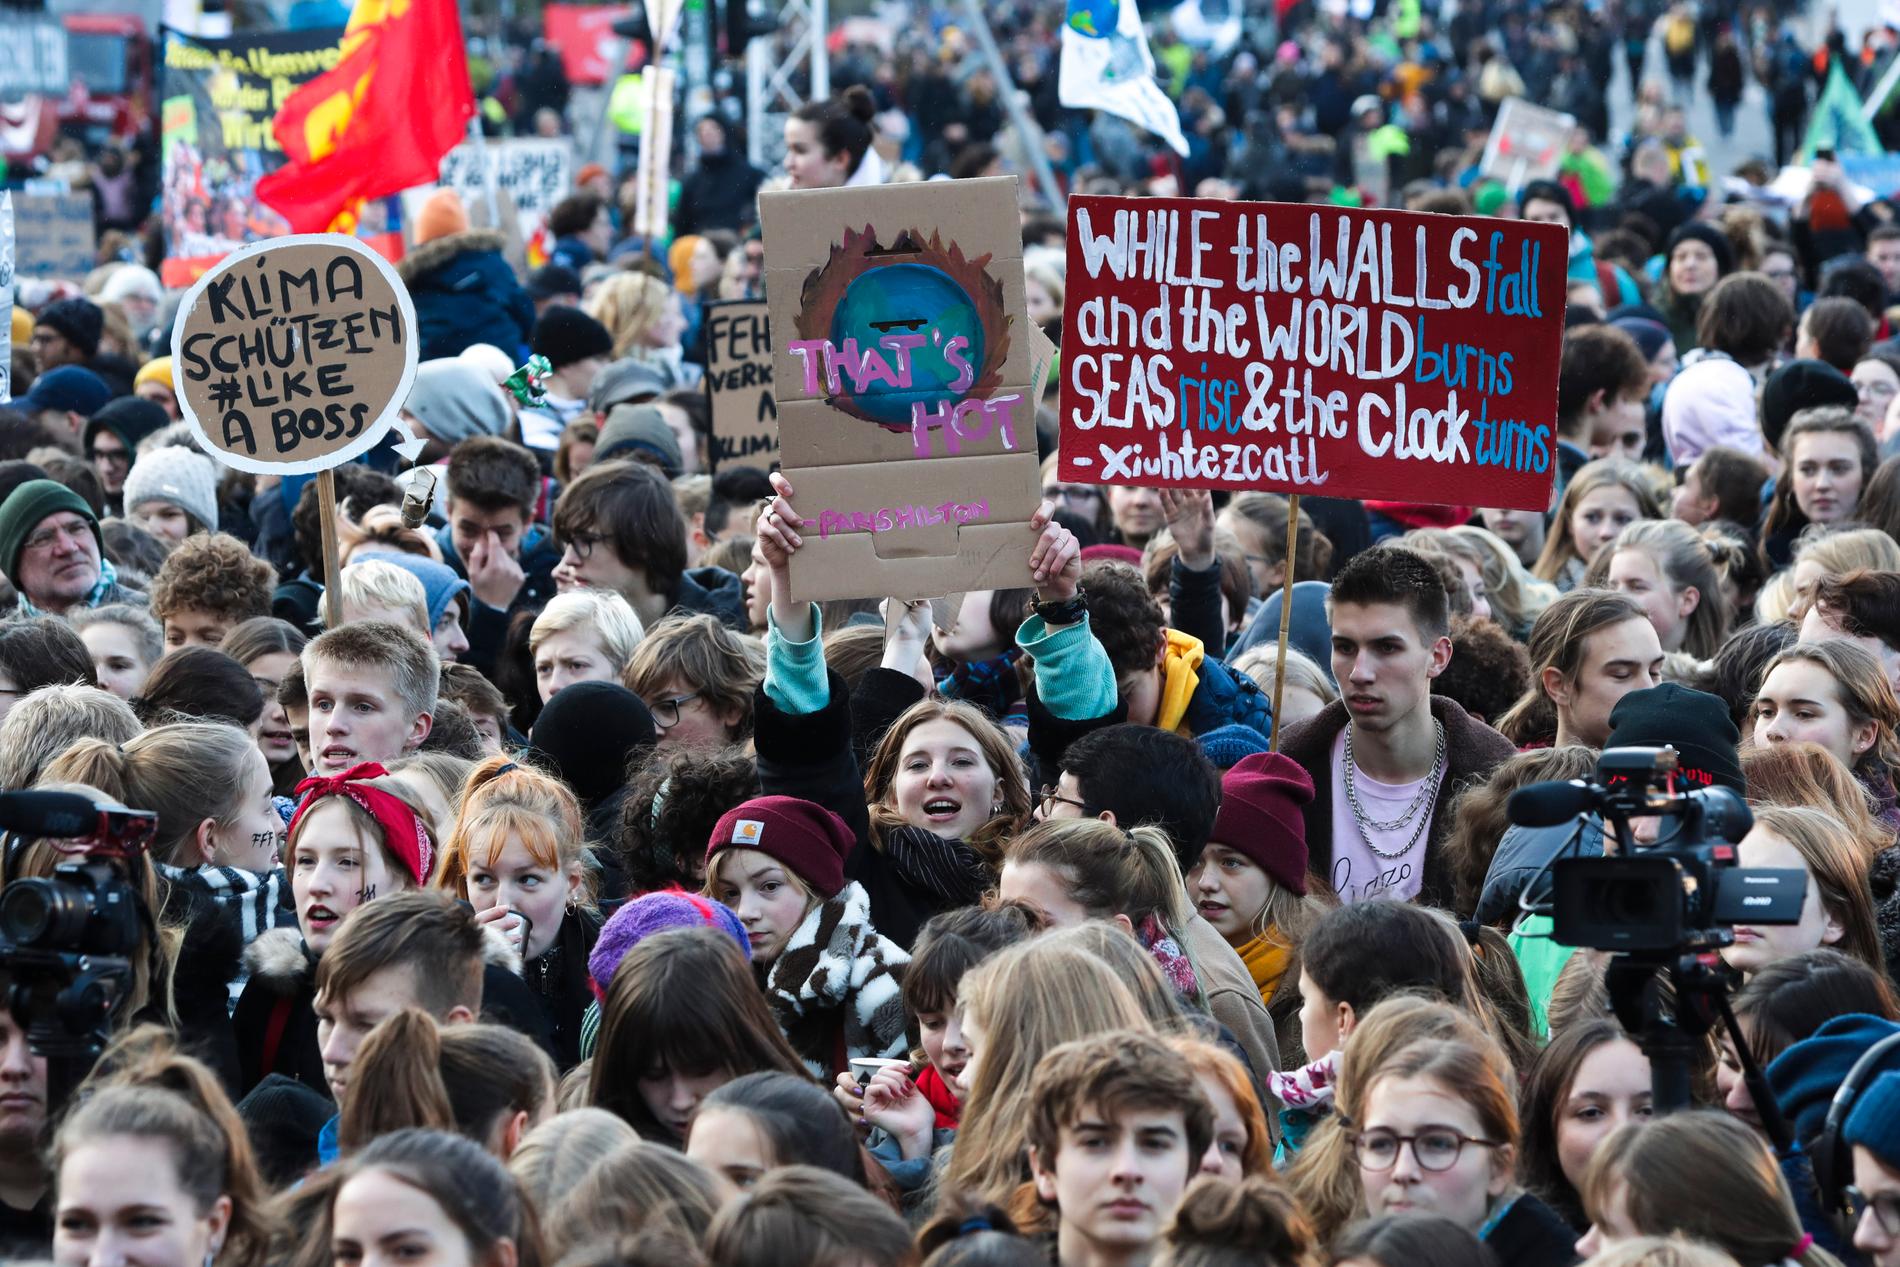 Unga människor demonstrerade i Berlin i fredags med krav på att regeringar runt om i världen ska agera mot klimatförändringarna.